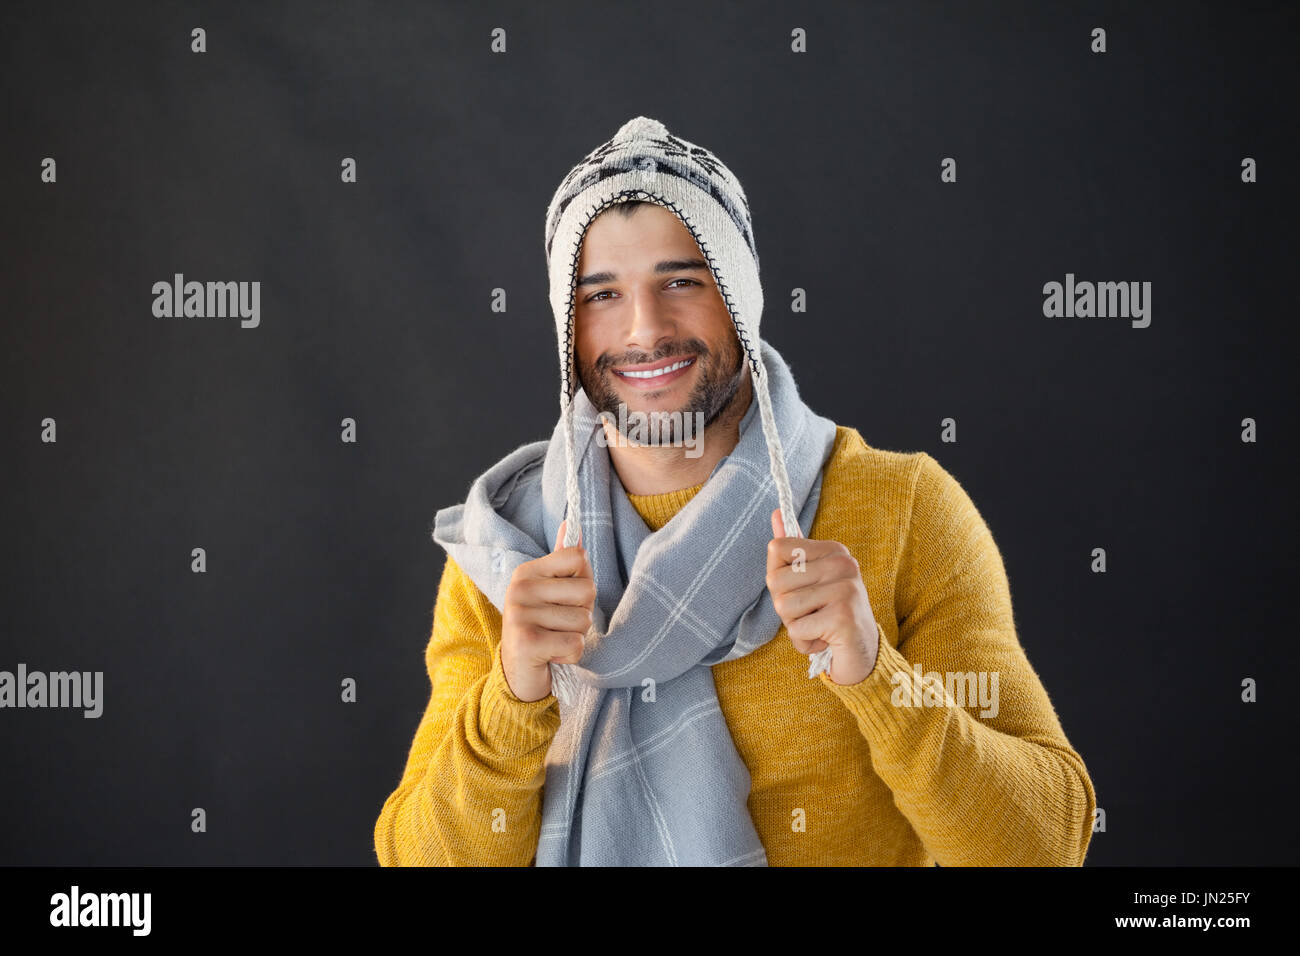 Ritratto di uomo sorridente holding wooly hat su sfondo nero Foto Stock